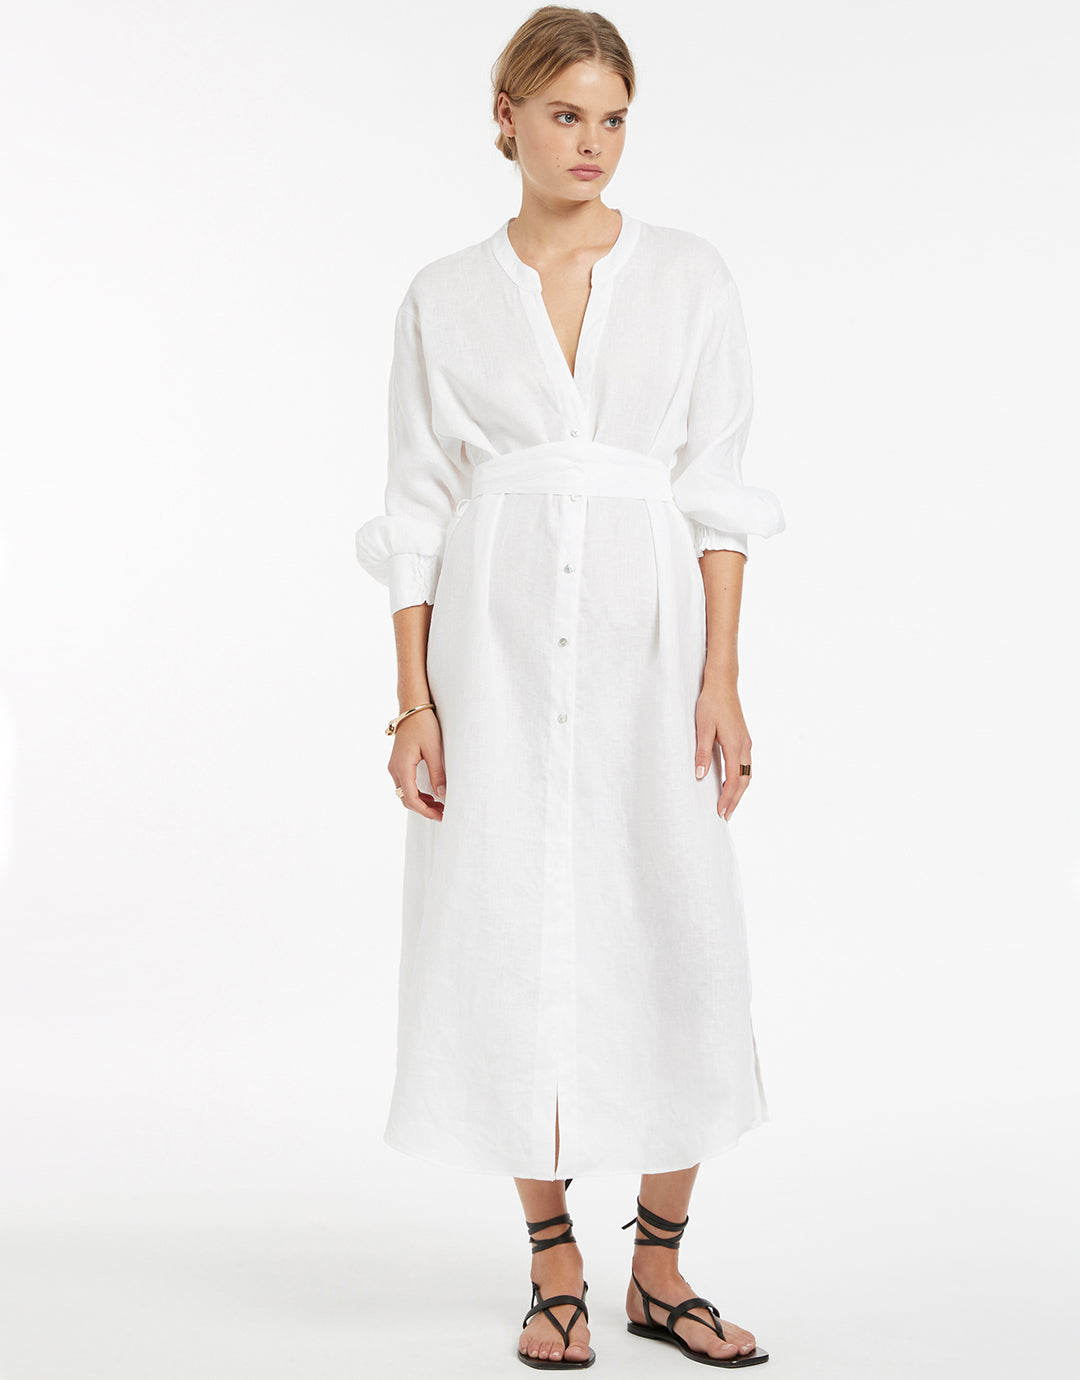 Jetset Shirred Cuff Shirtdress - White - Simply Beach UK